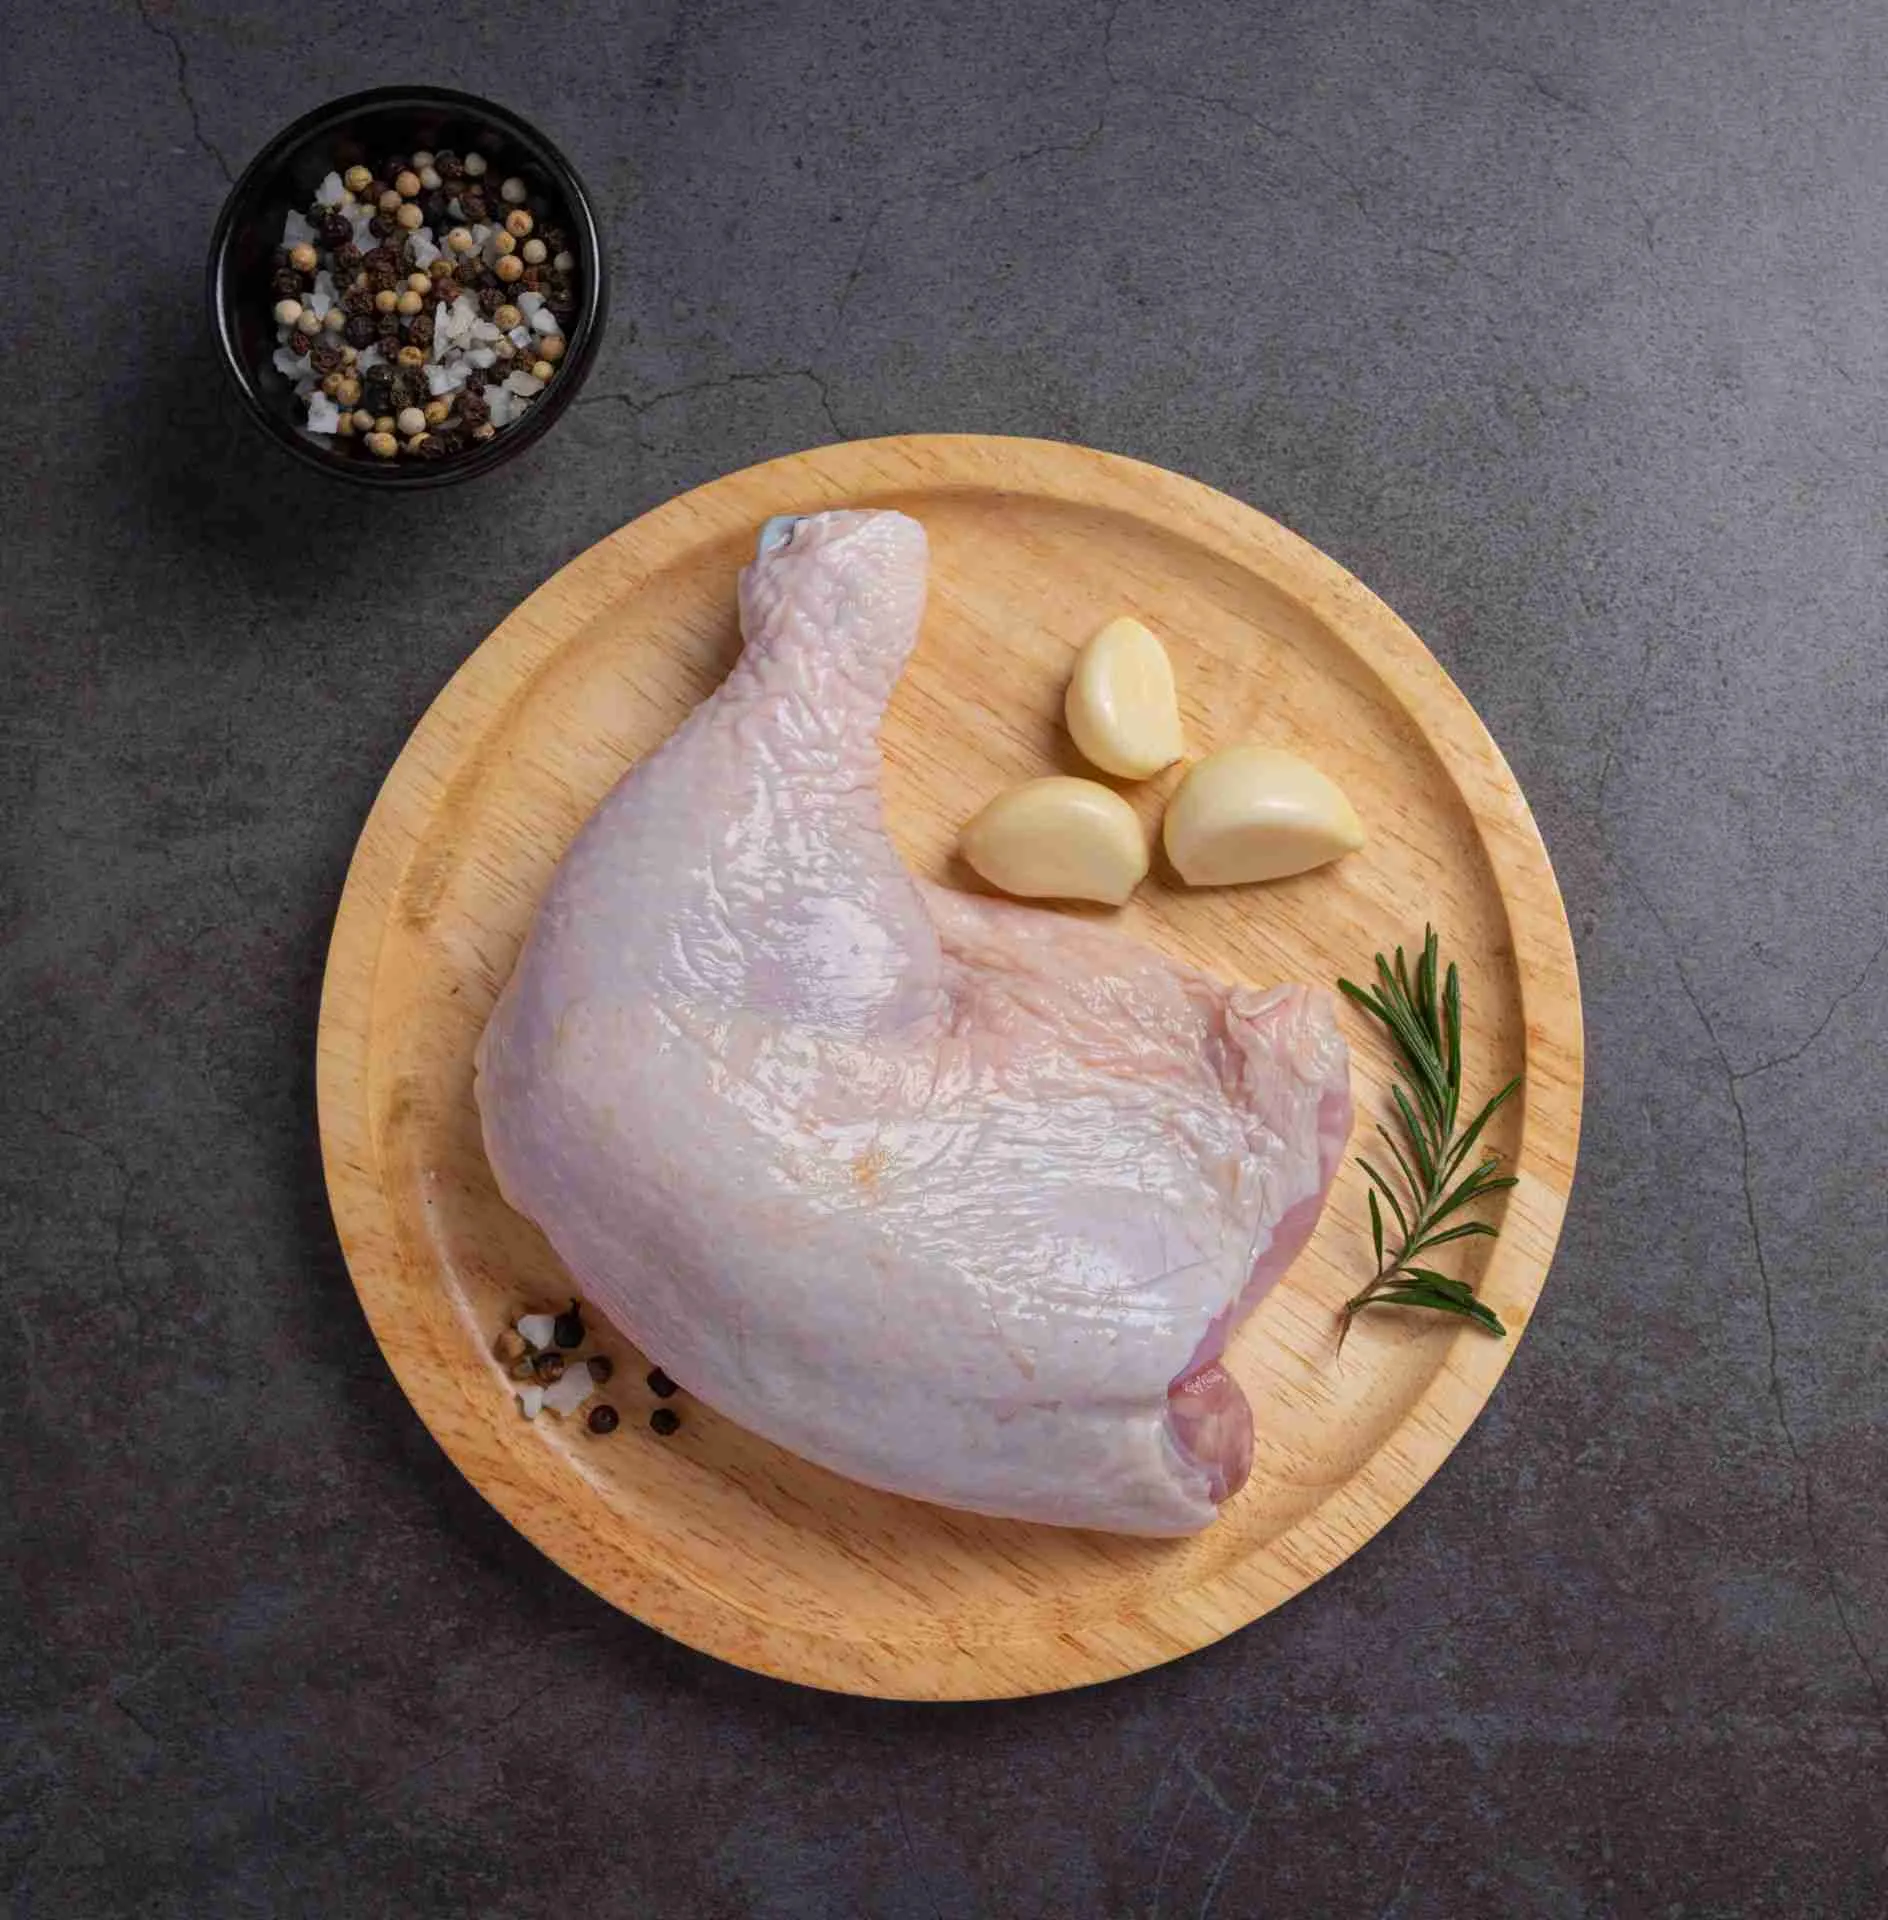 Quanto tempo è sicuro conservare il pollame crudo nel frigorifero?